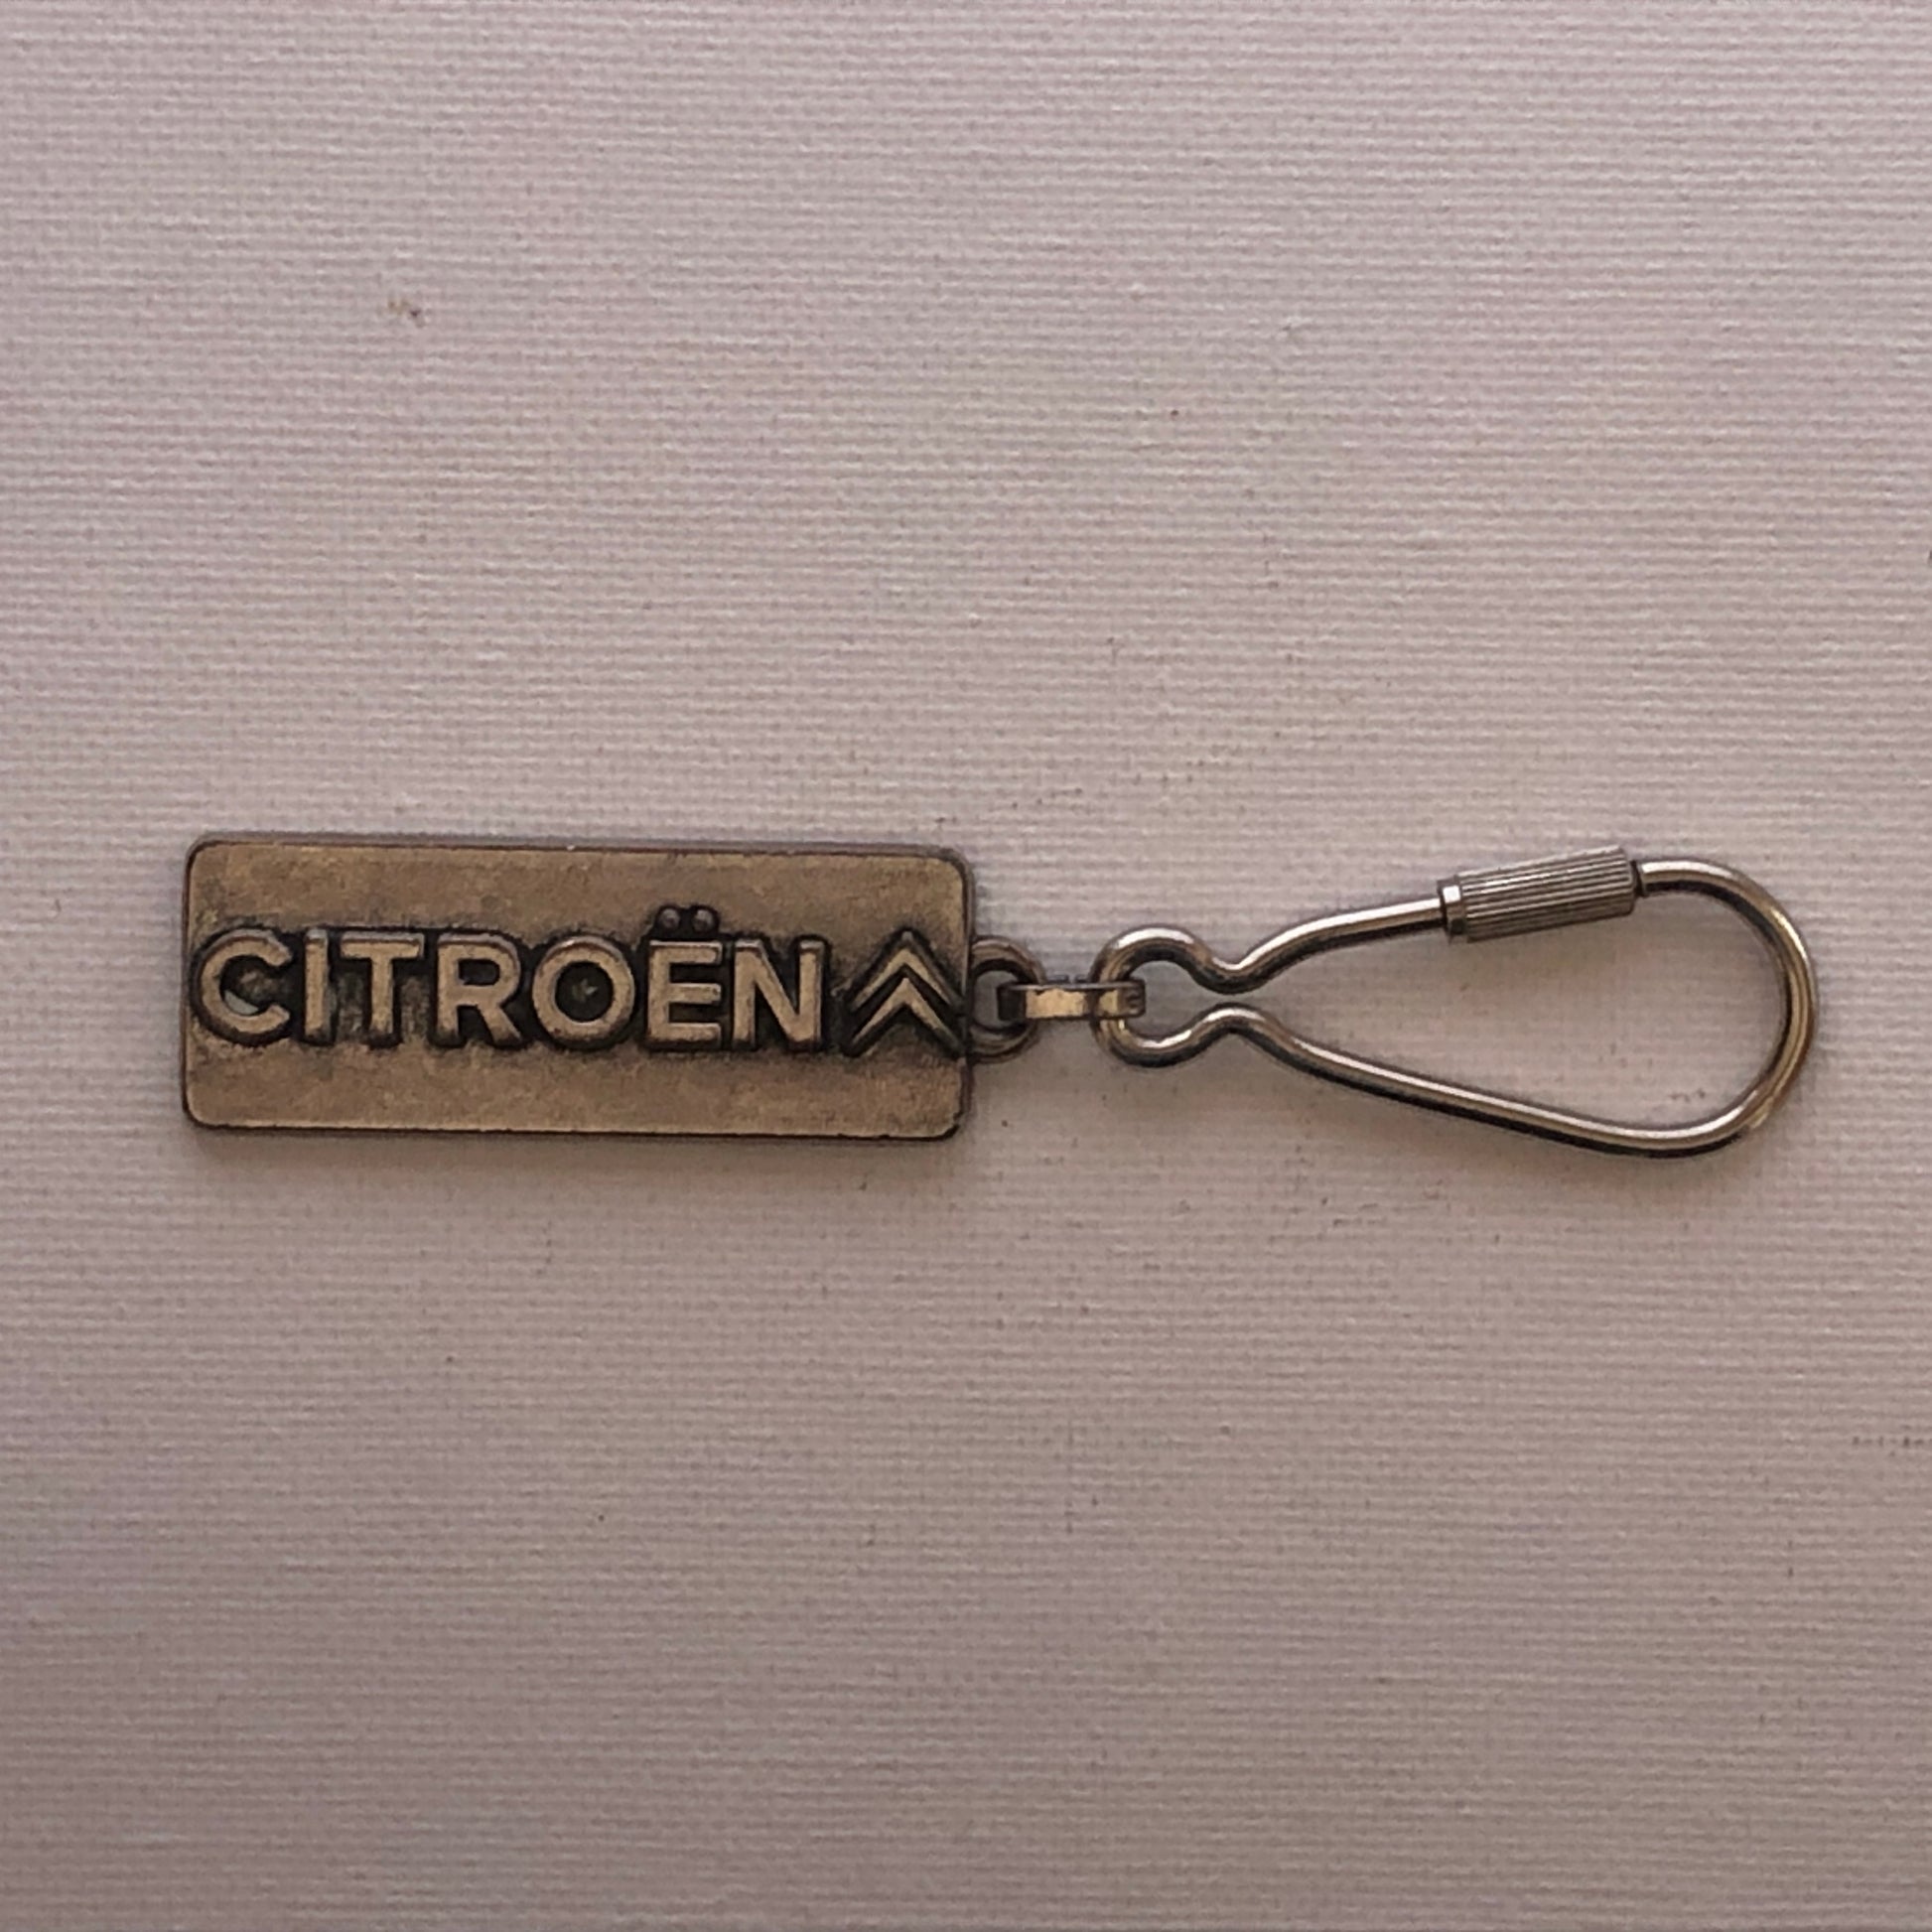 Citroën, Portachiavi con Stemma della Citroën, Anni e Materiali Differenti - Raggi's Collectibles' Automotive Art